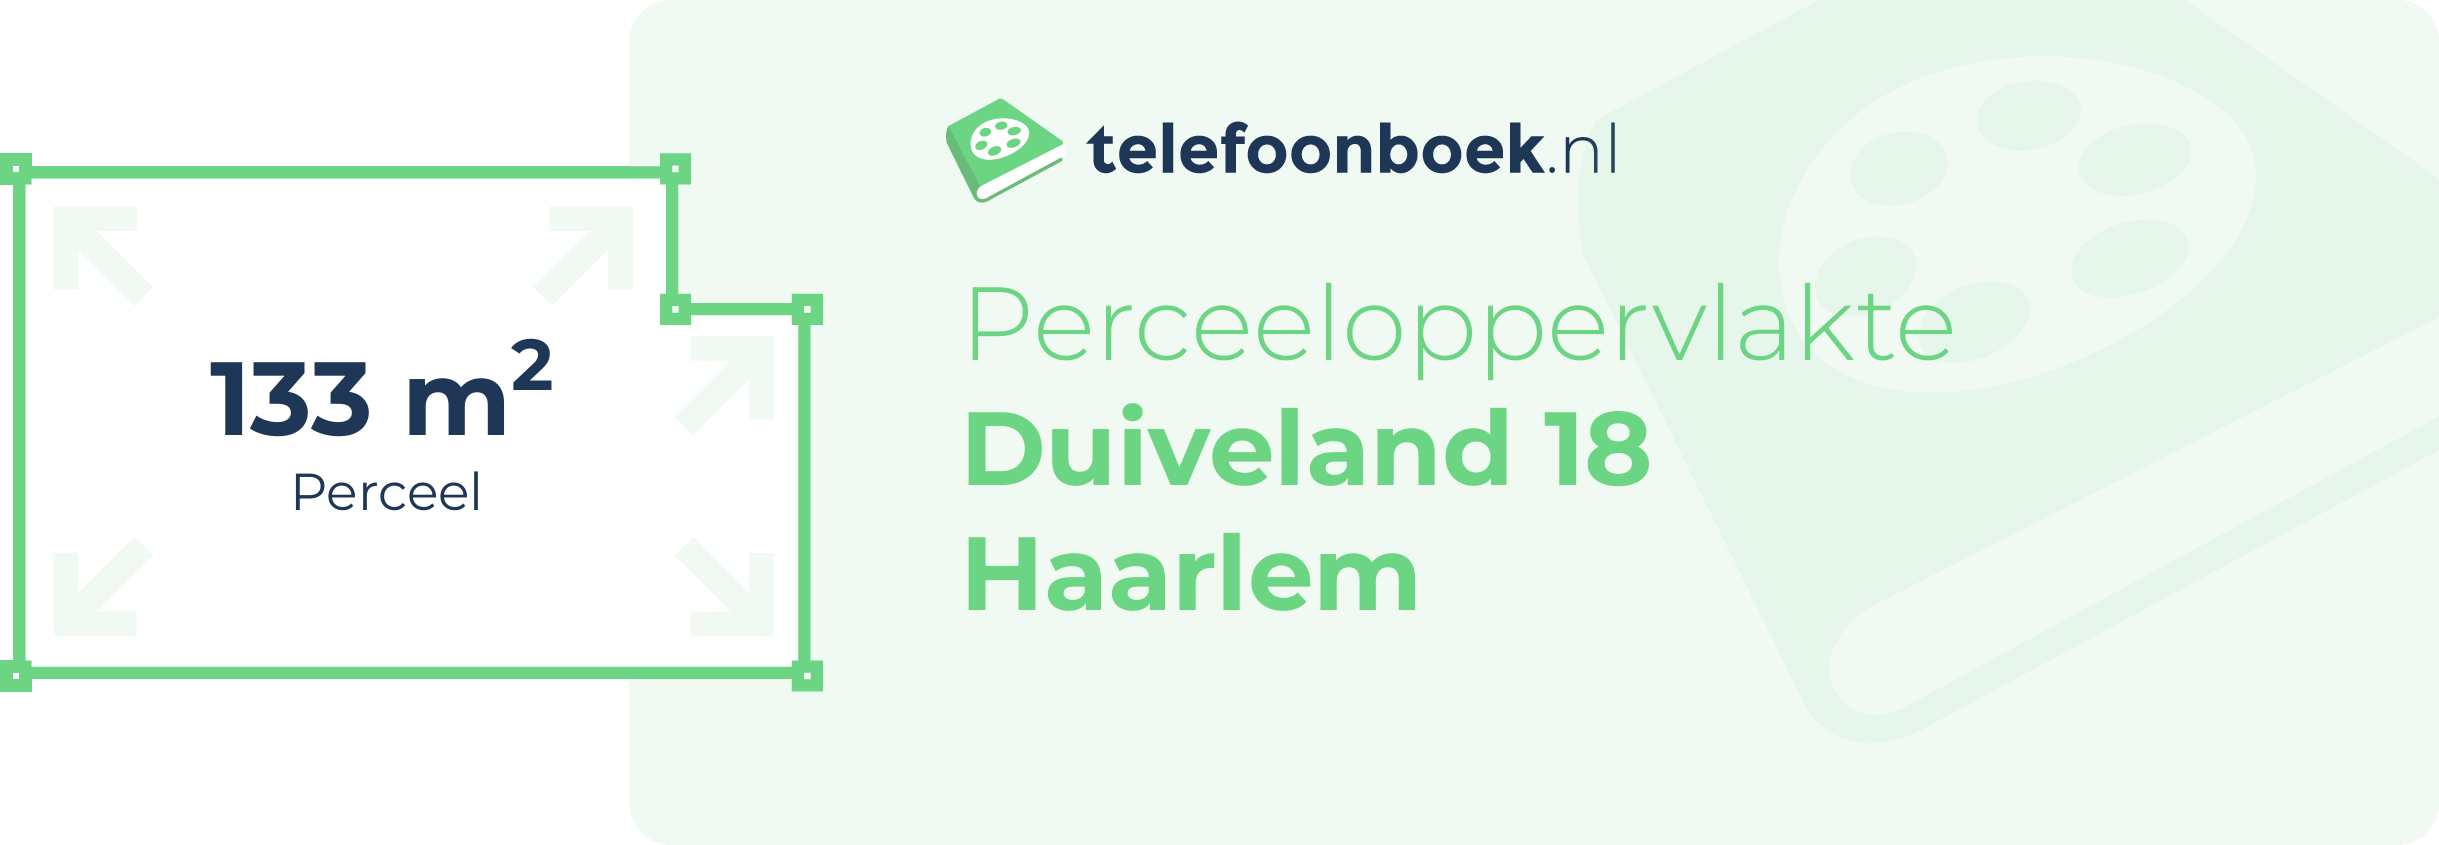 Perceeloppervlakte Duiveland 18 Haarlem